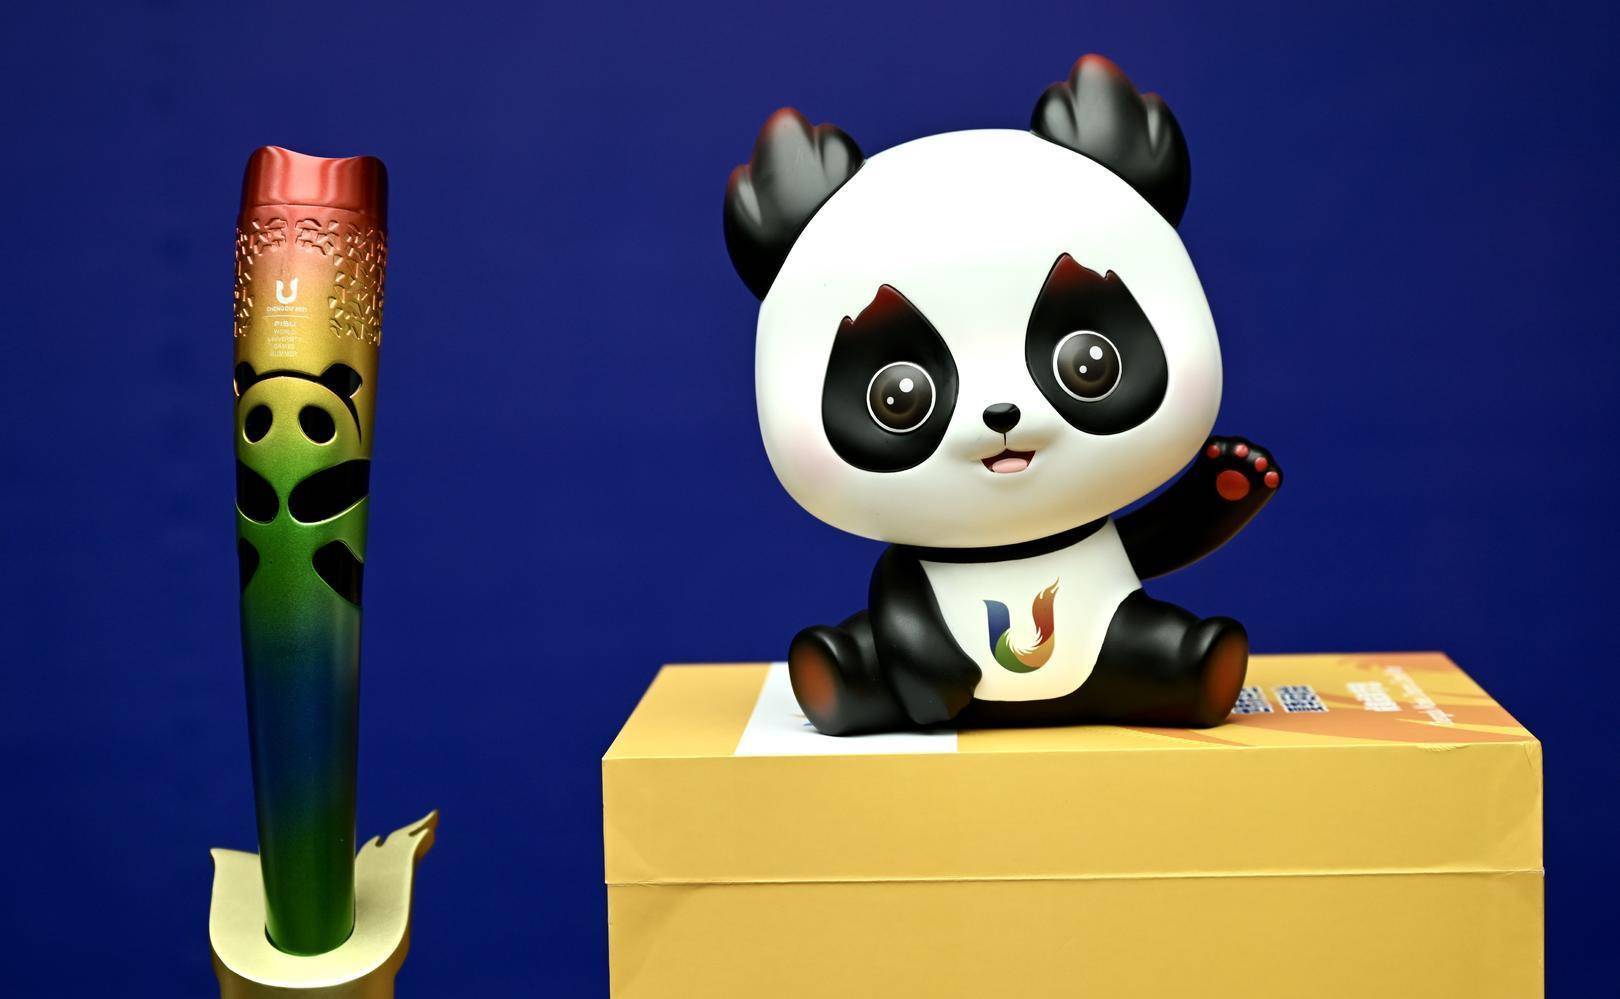 大运会吉祥物荣宝仿照熊猫基地真实的大熊猫芝麻制作